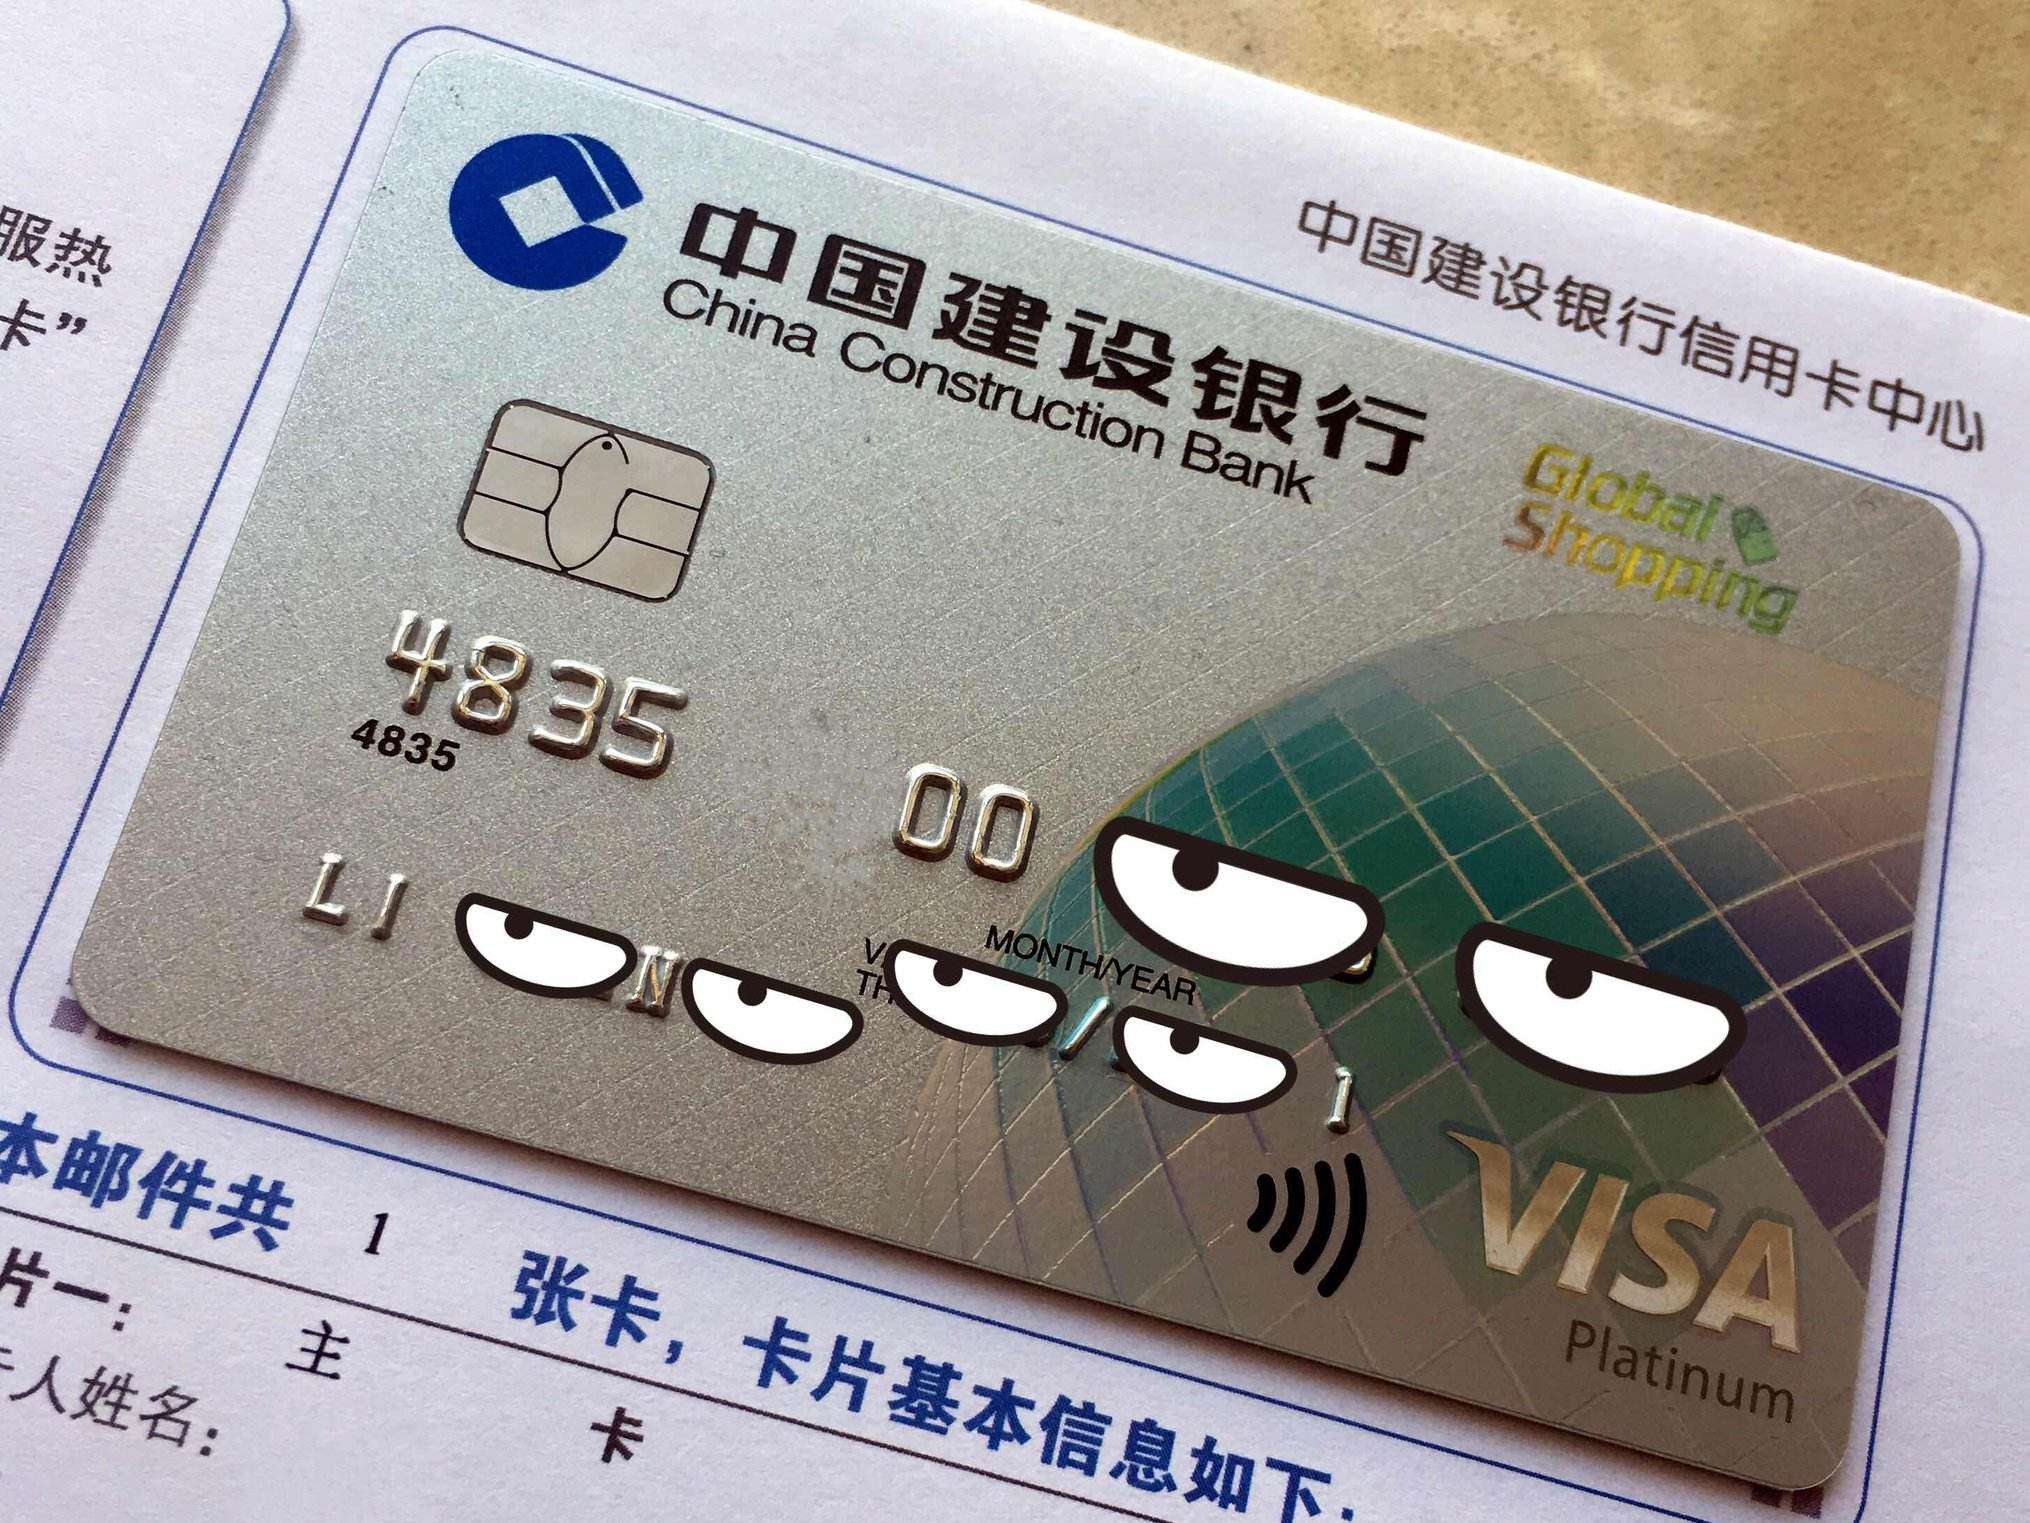 长安信用客服银行卡电话查询_长安银行卡客服电话多少_长安银行信用卡客服电话